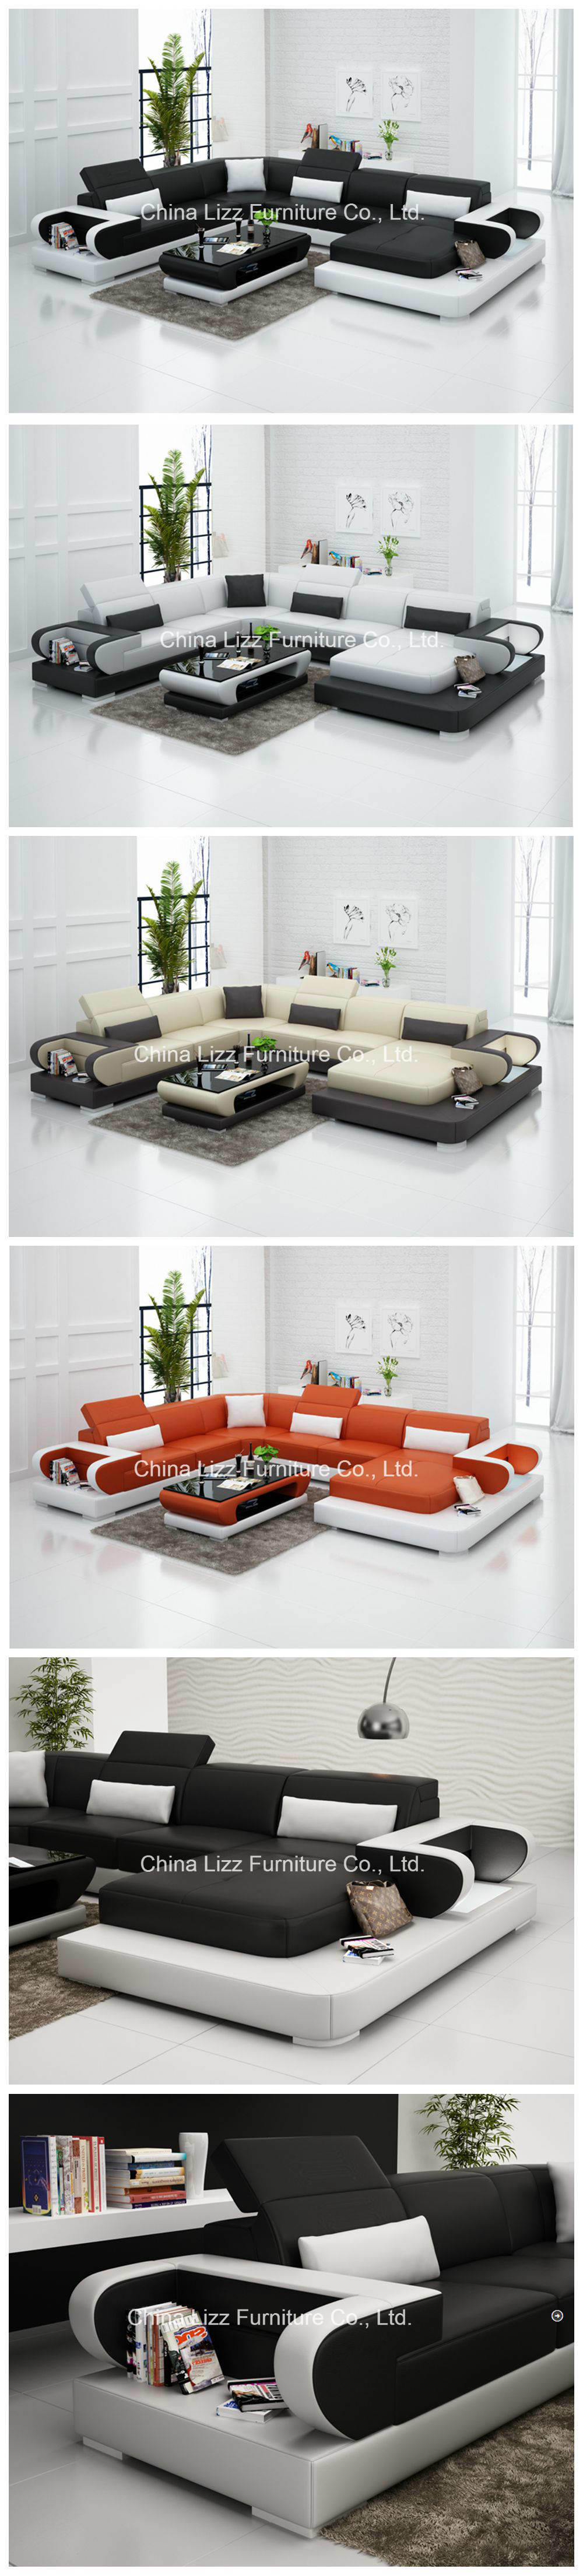 Divani Sofa Contemporary Imitation Leather Sectional Sofa